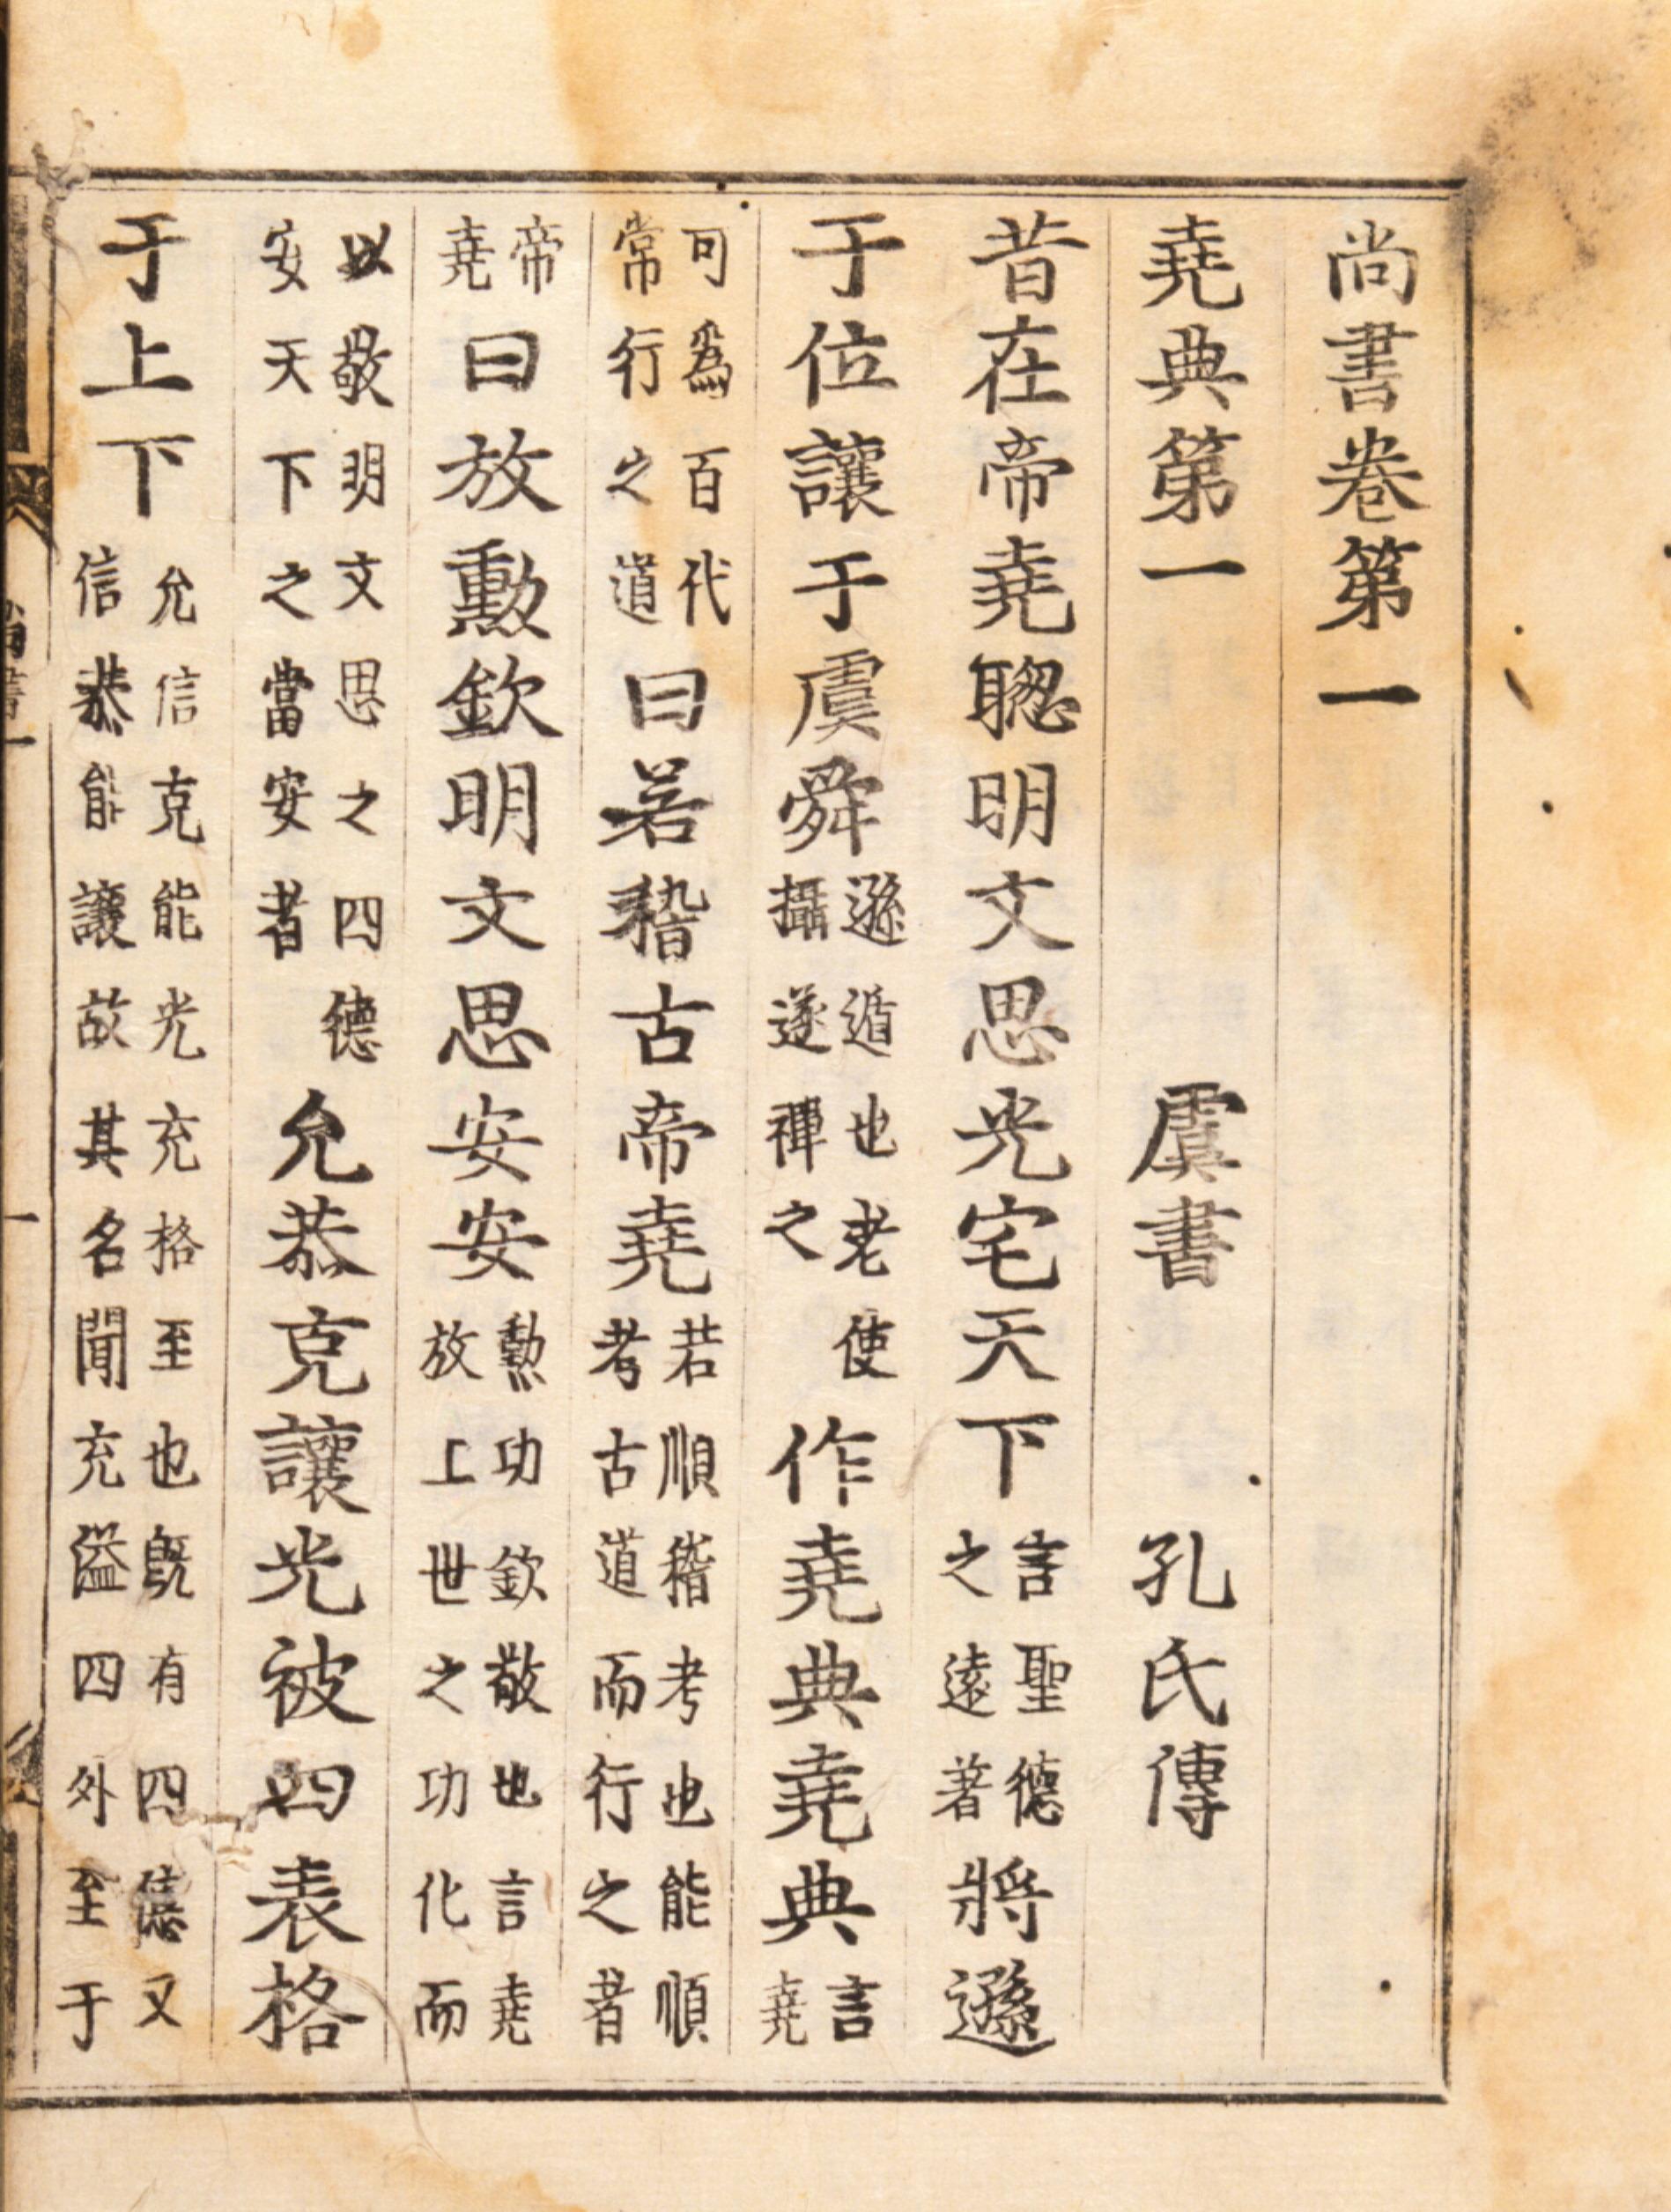 尚書-數位典藏與學習聯合目錄(549551)